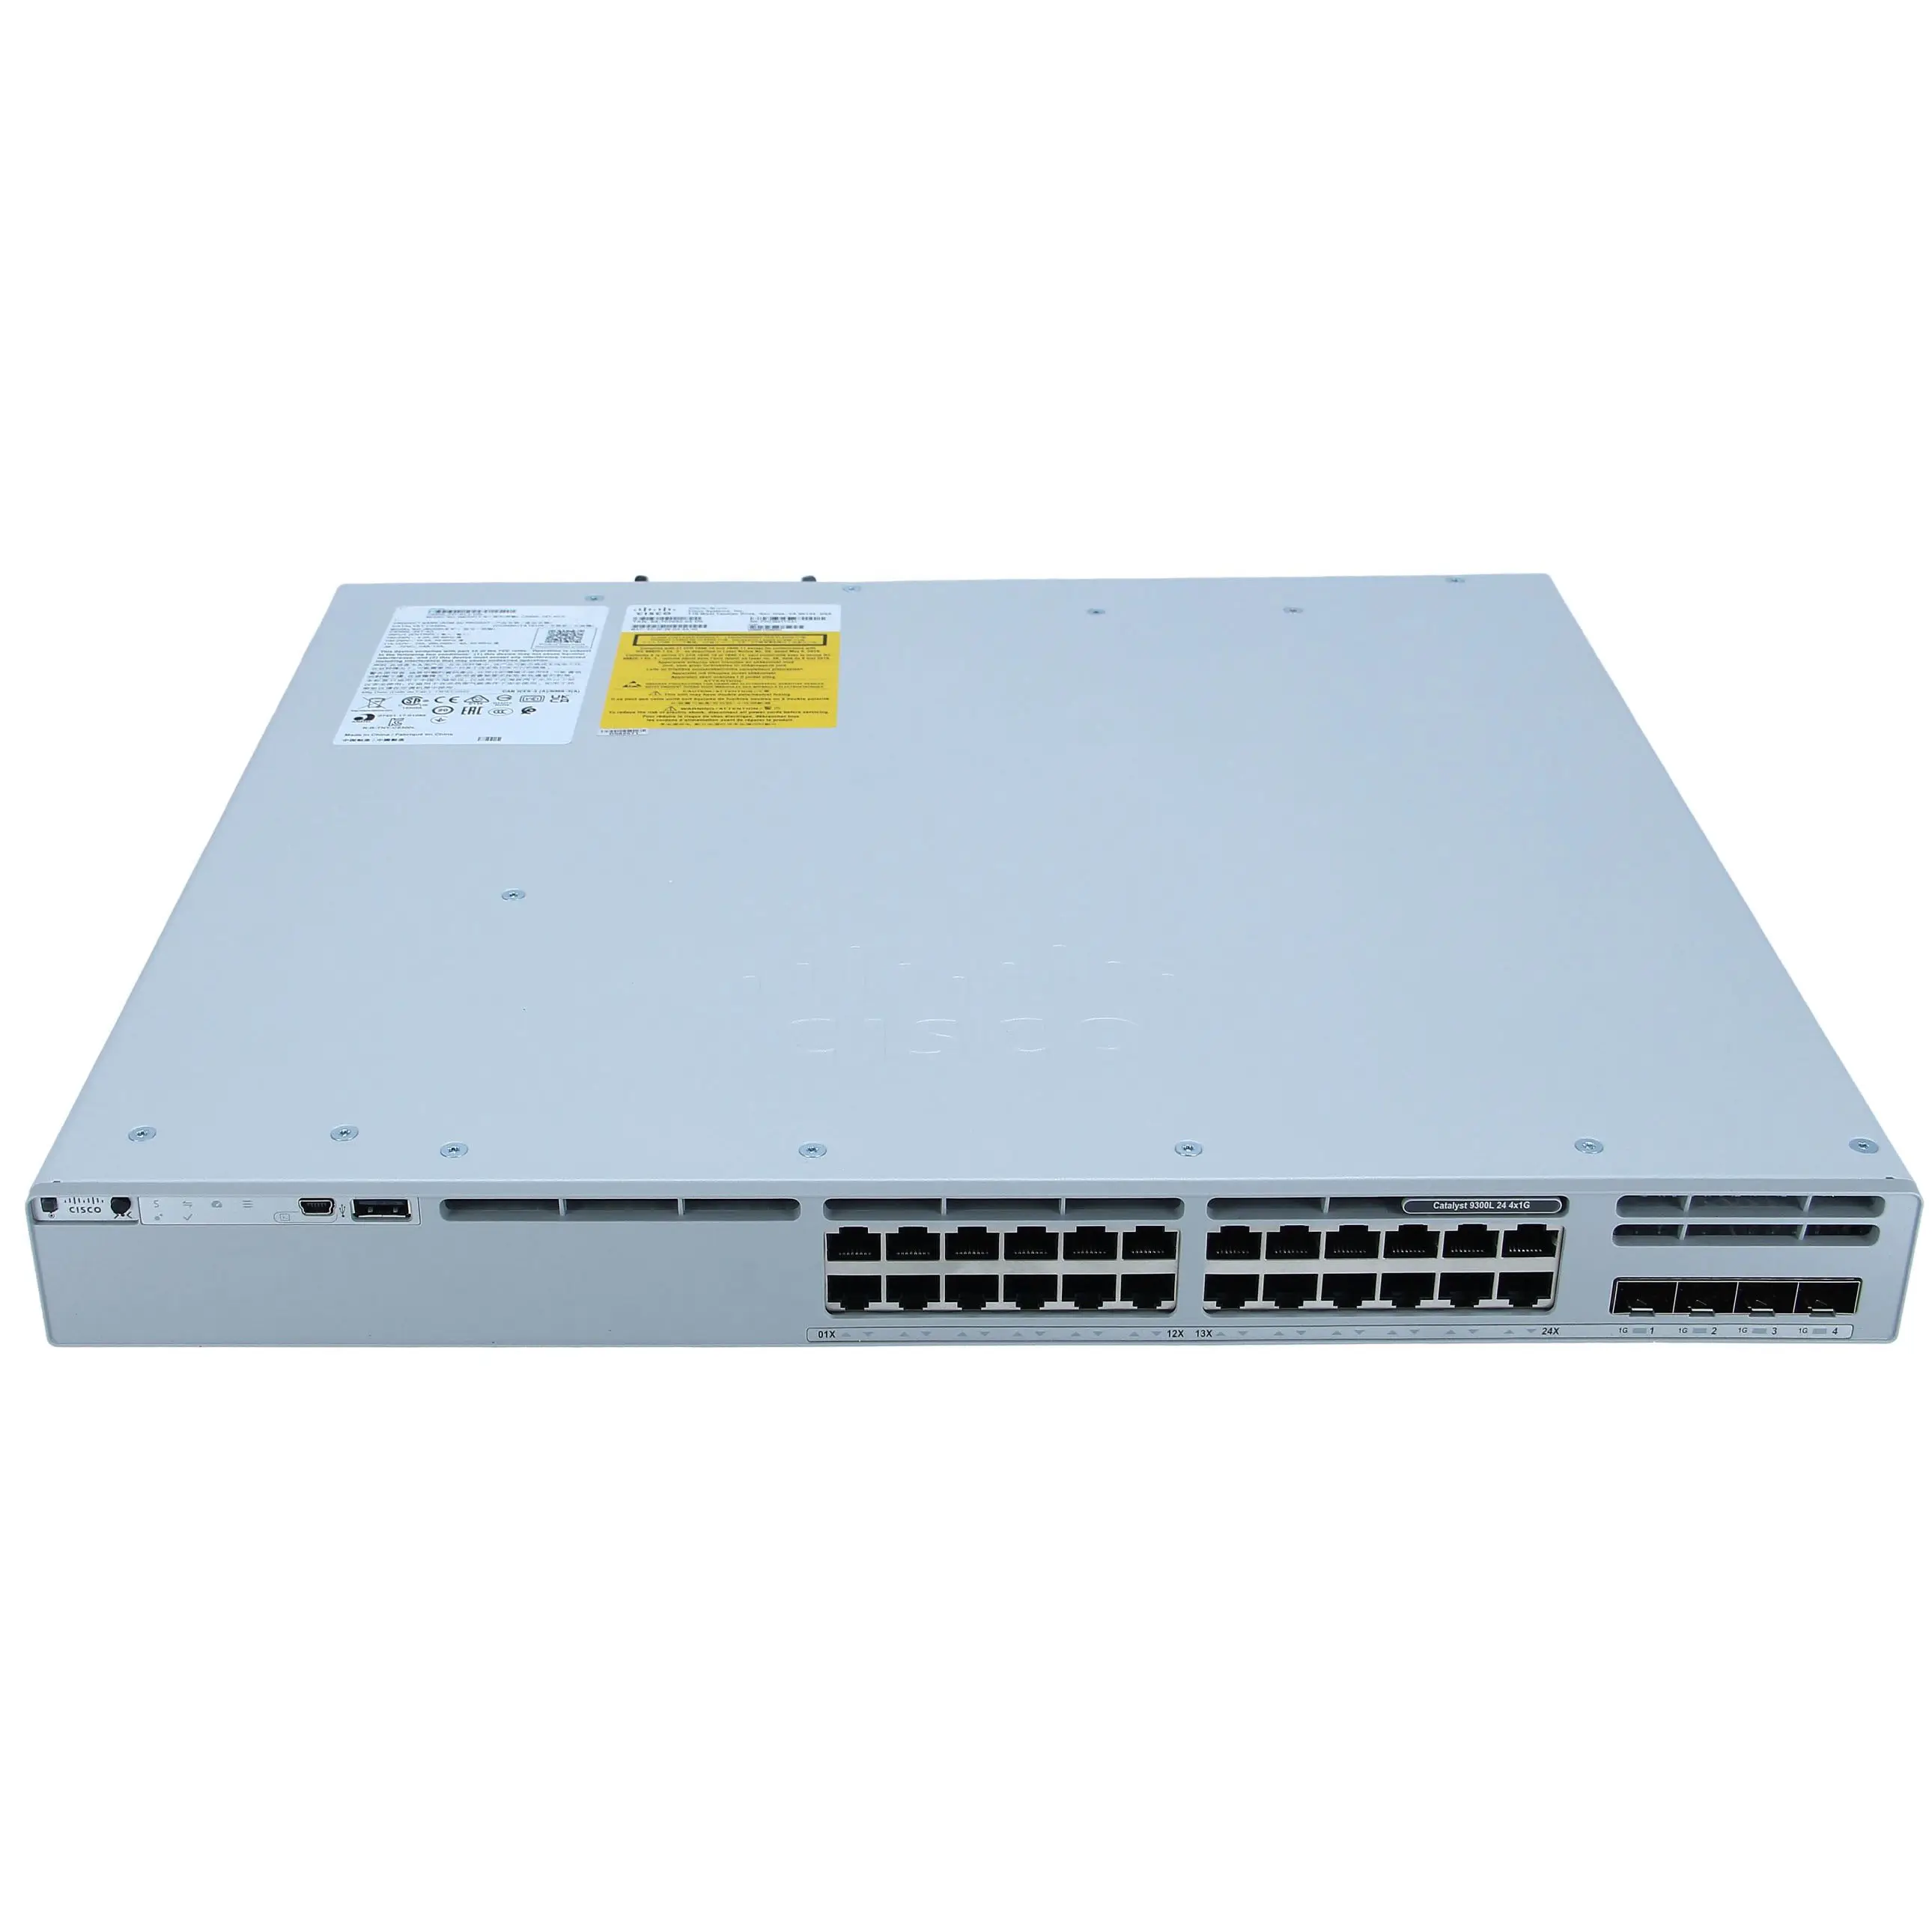 Schlussverkauf jüngst C9300L-24T-4G-E 9300L 24 Port Daten-Switch 24 Poe Network Essentials 4x1G Uplink Network 24 Port Switch